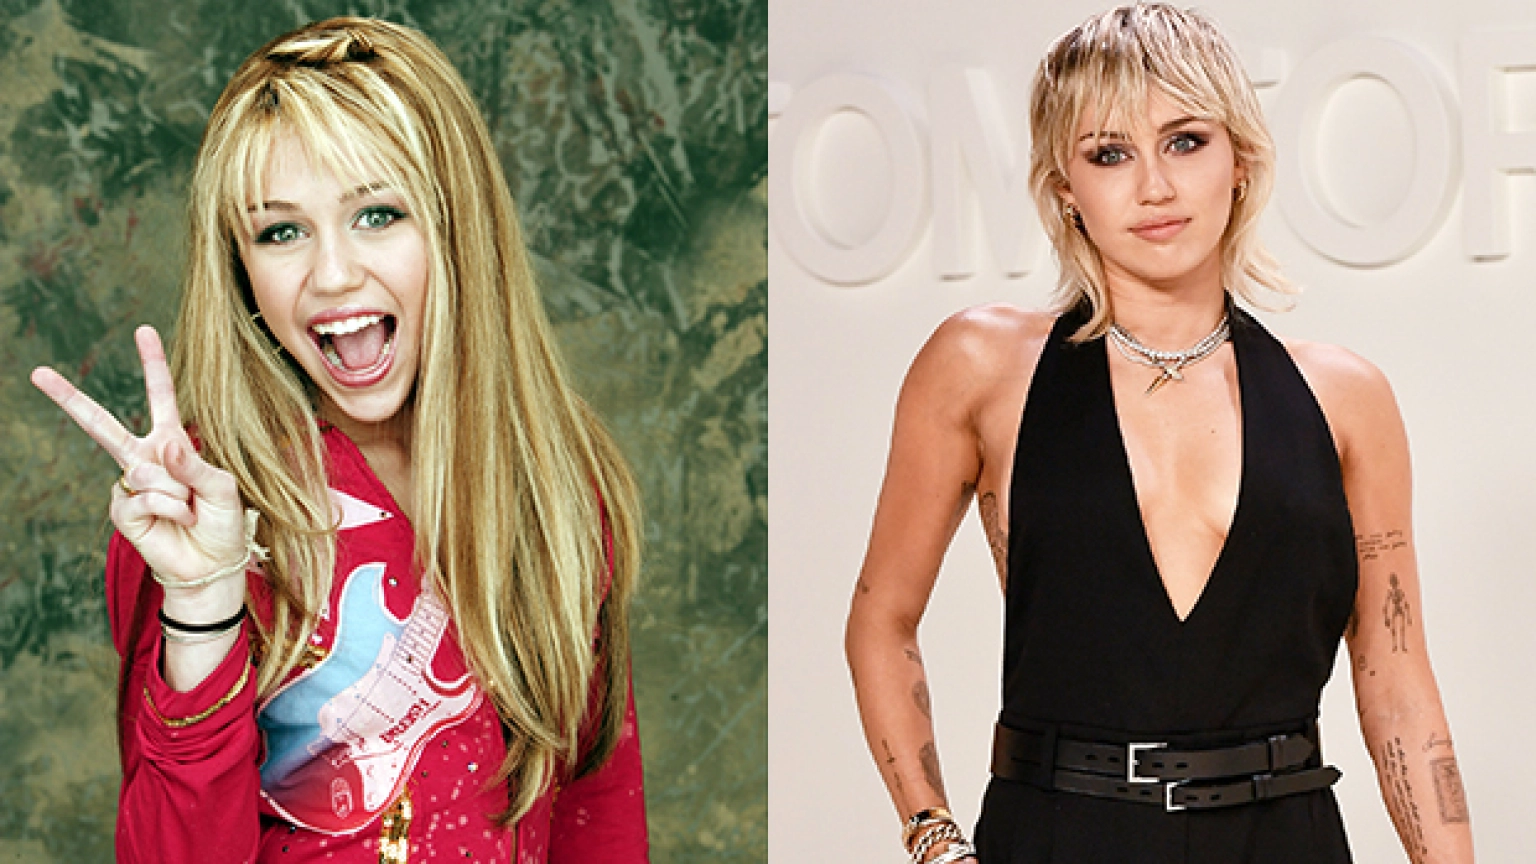 Miley Cyrus în rolul Hannah Montana într-o perucă lungă blondă, zâmbind cu gura deschisă și semn de pace. Miley Cyrus acum cu părul scurt, blond platinat și un top negru decoltat, care își arată tatuajele.